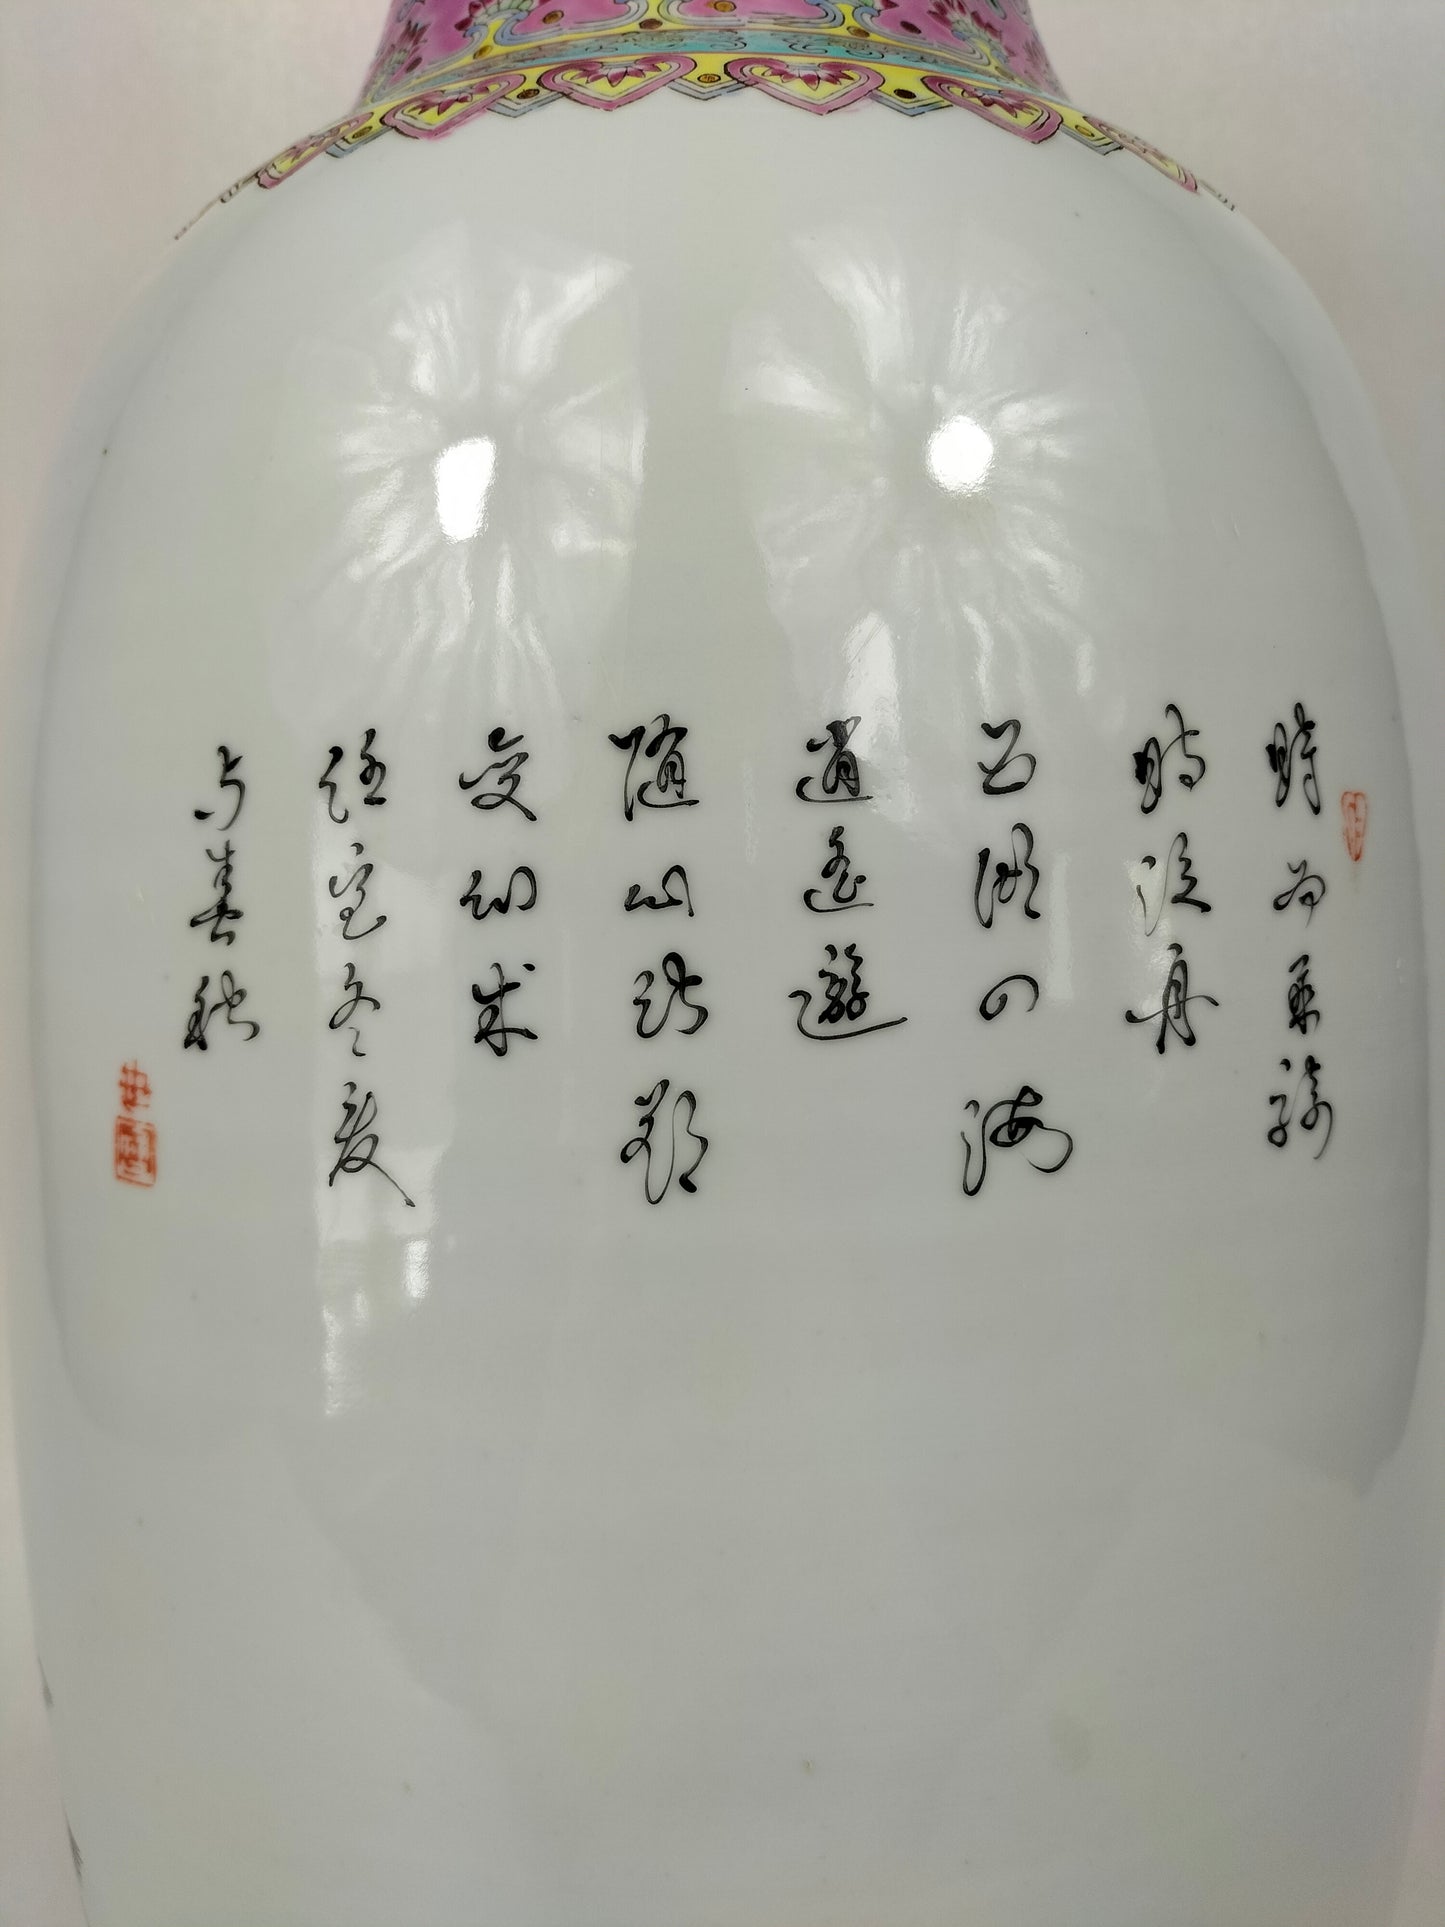 مزهرية ورد عائلية صينية كبيرة مزينة بالخالدين الثمانية // جينغدتشن - القرن العشرين